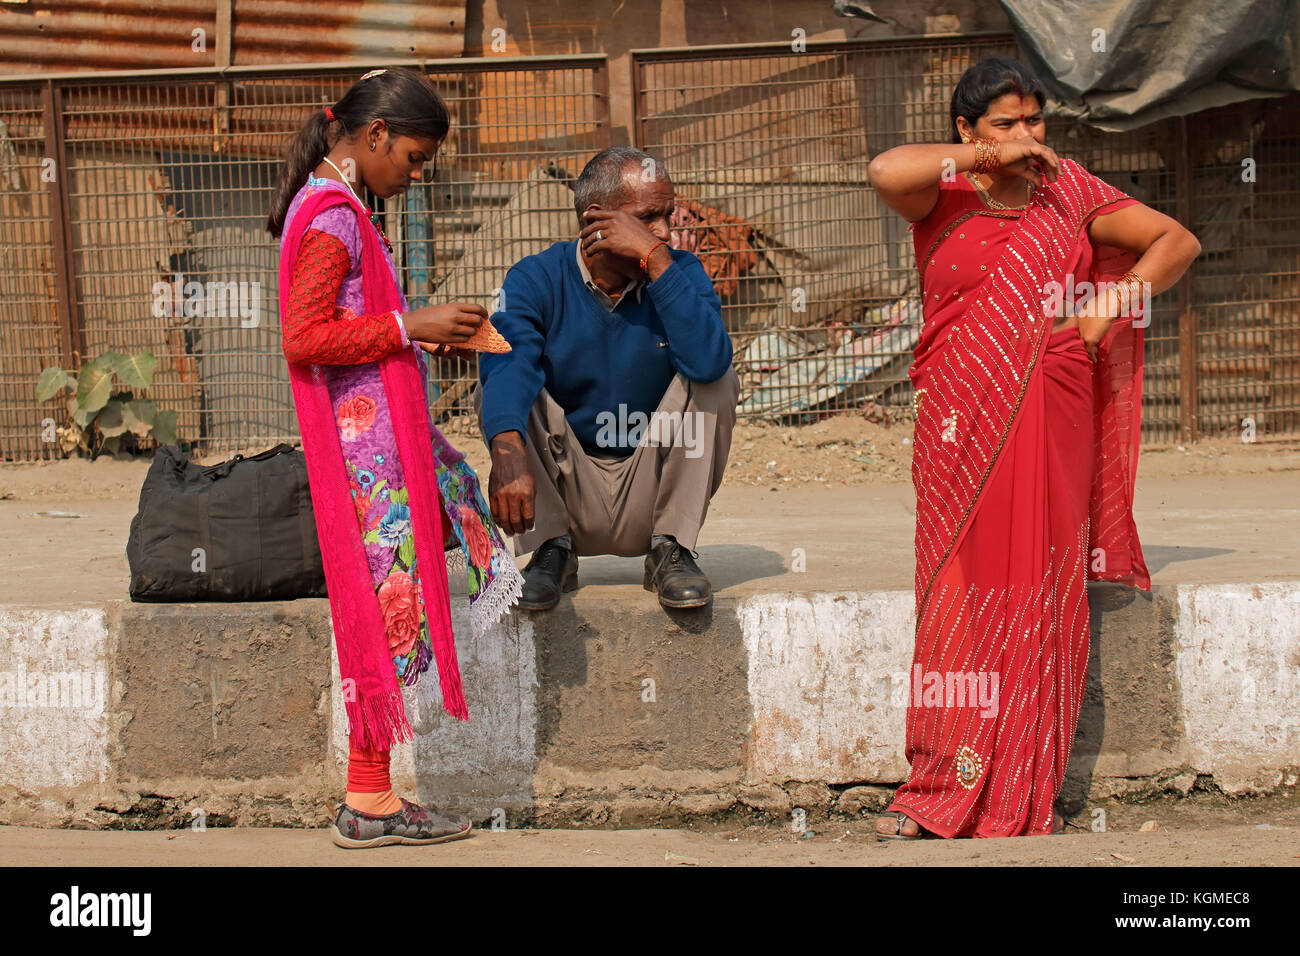 Delhi, Inde - le 24 novembre 2015 : l'homme et de femmes indiennes dans la région de robes traditionnelles colorées dans la ville peuplée de deli Banque D'Images